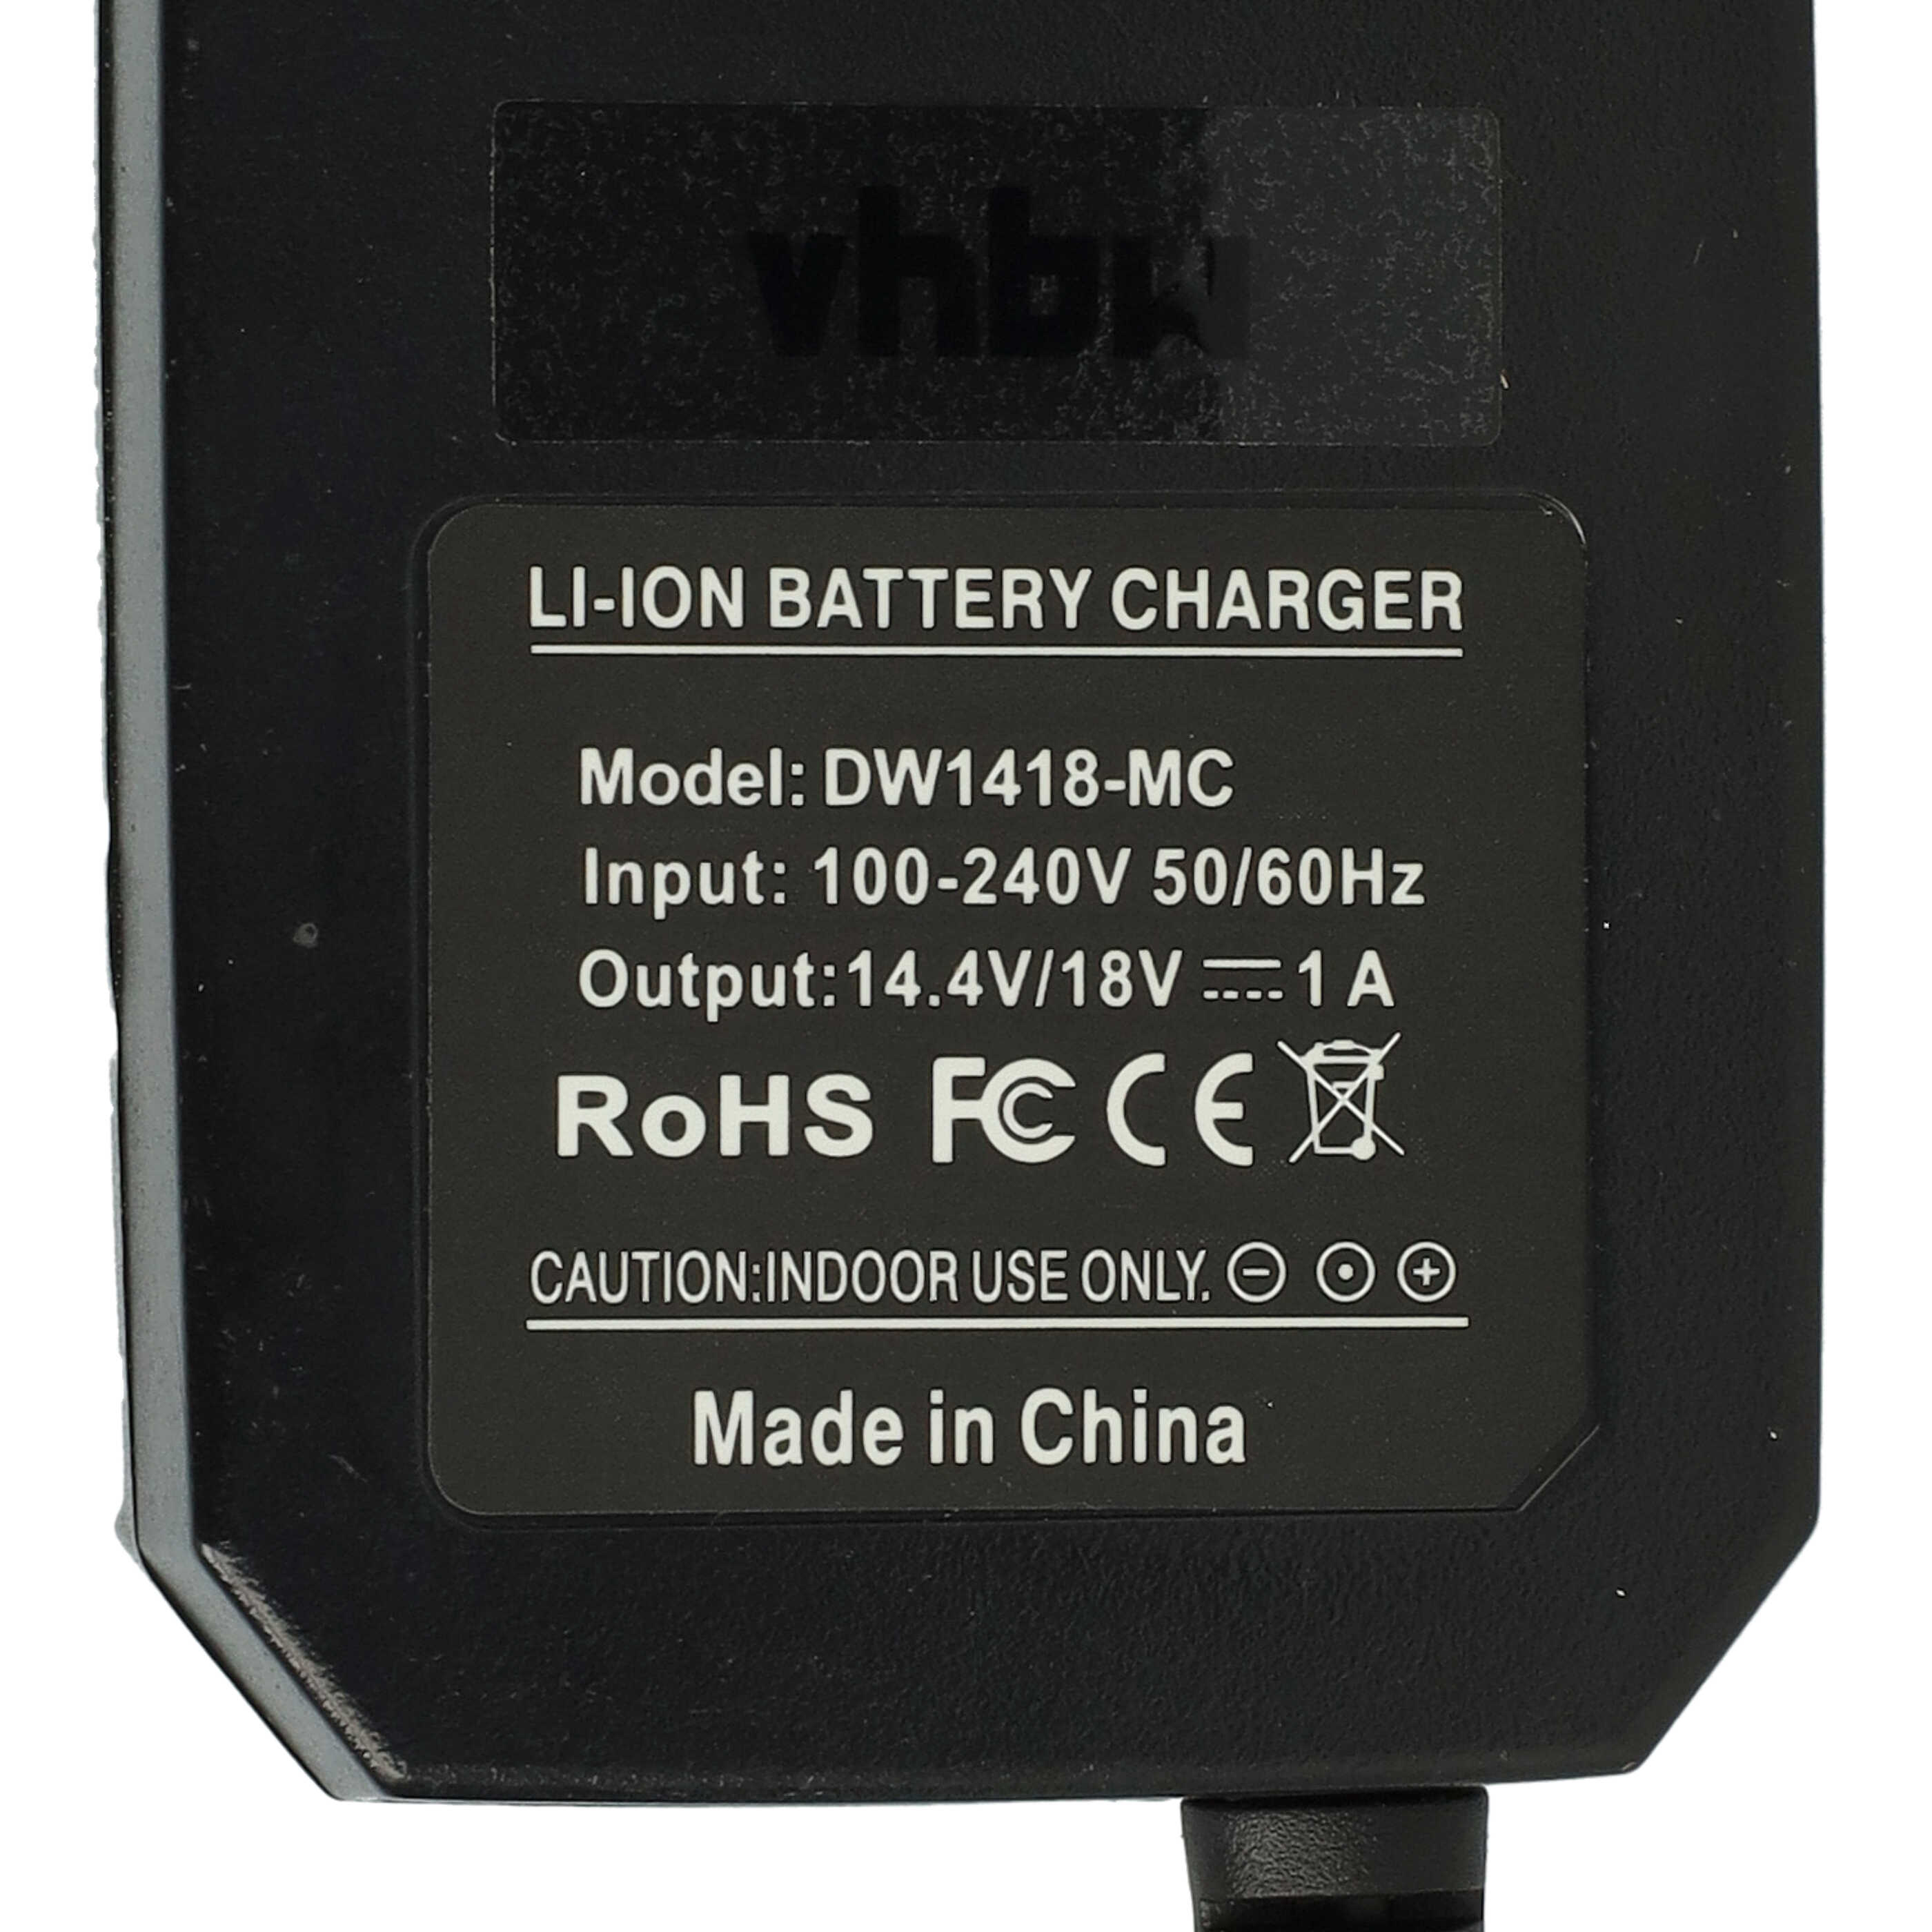 Charger suitable for CL3.C18S Dewalt, CL3.C18S Power Tool Batteries etc. Li-Ion 21V